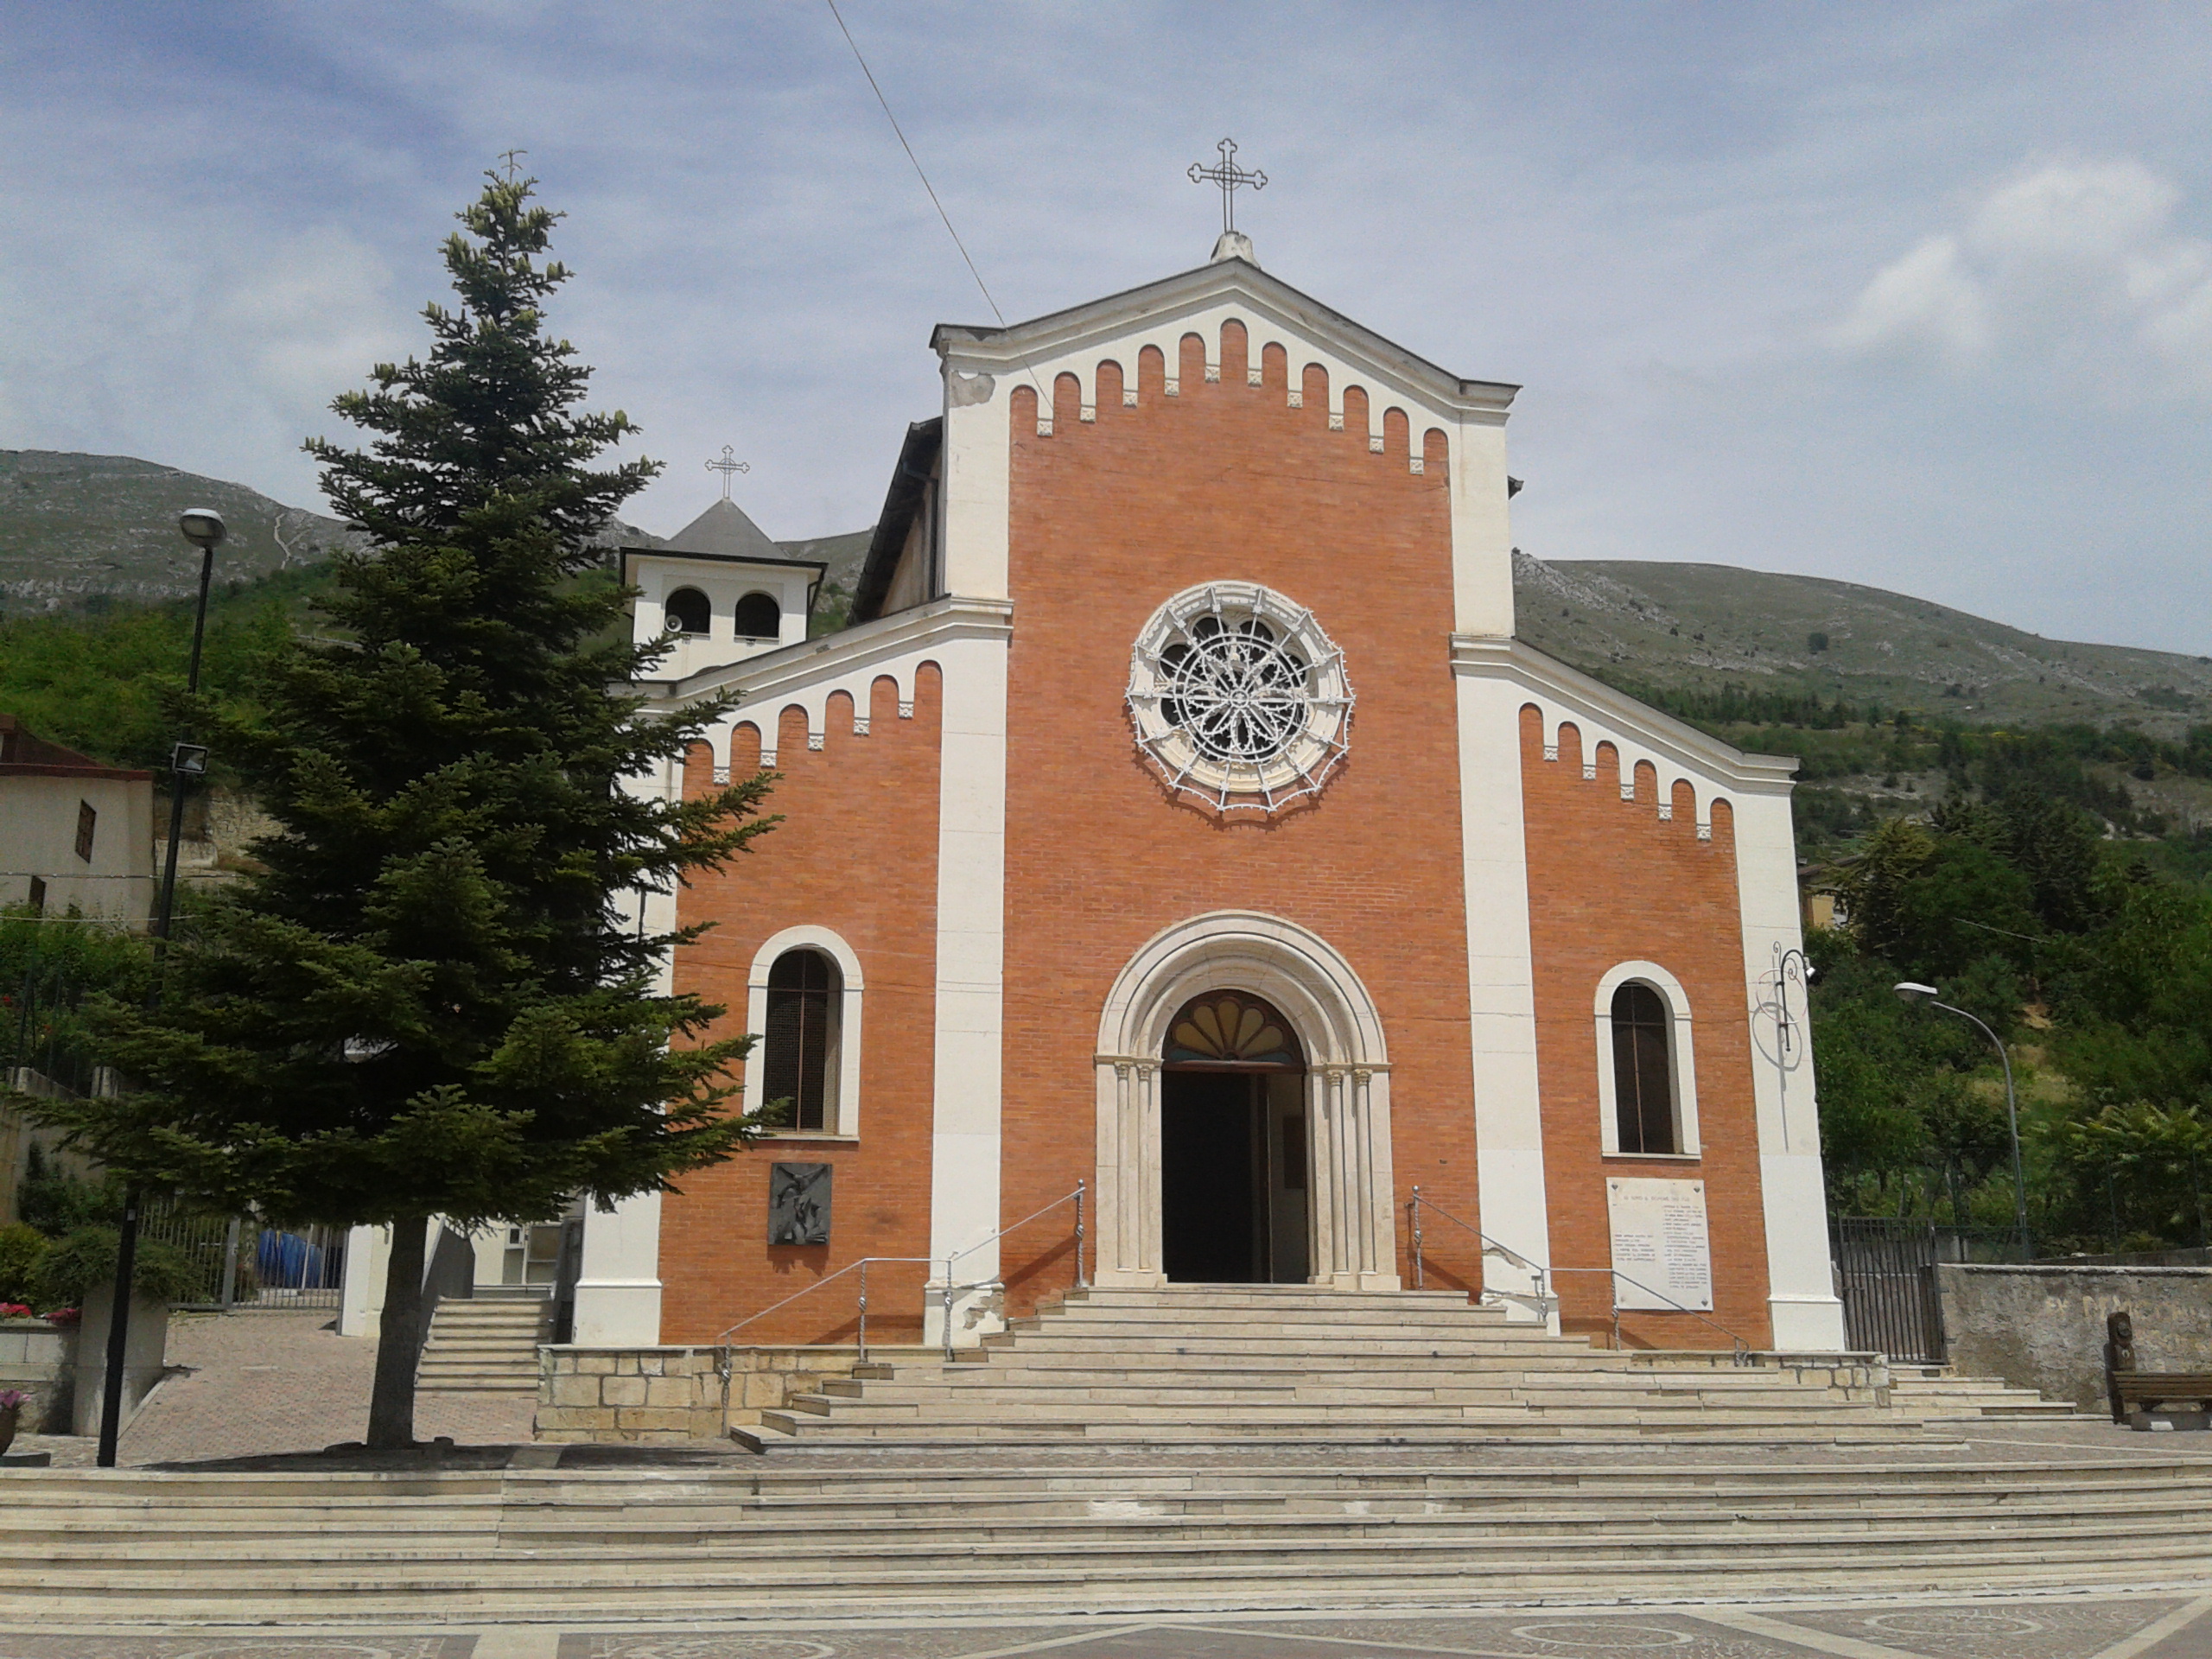 La statua di Sant'Onofrio, dopo il lavoro di restauro, rientra a Paterno